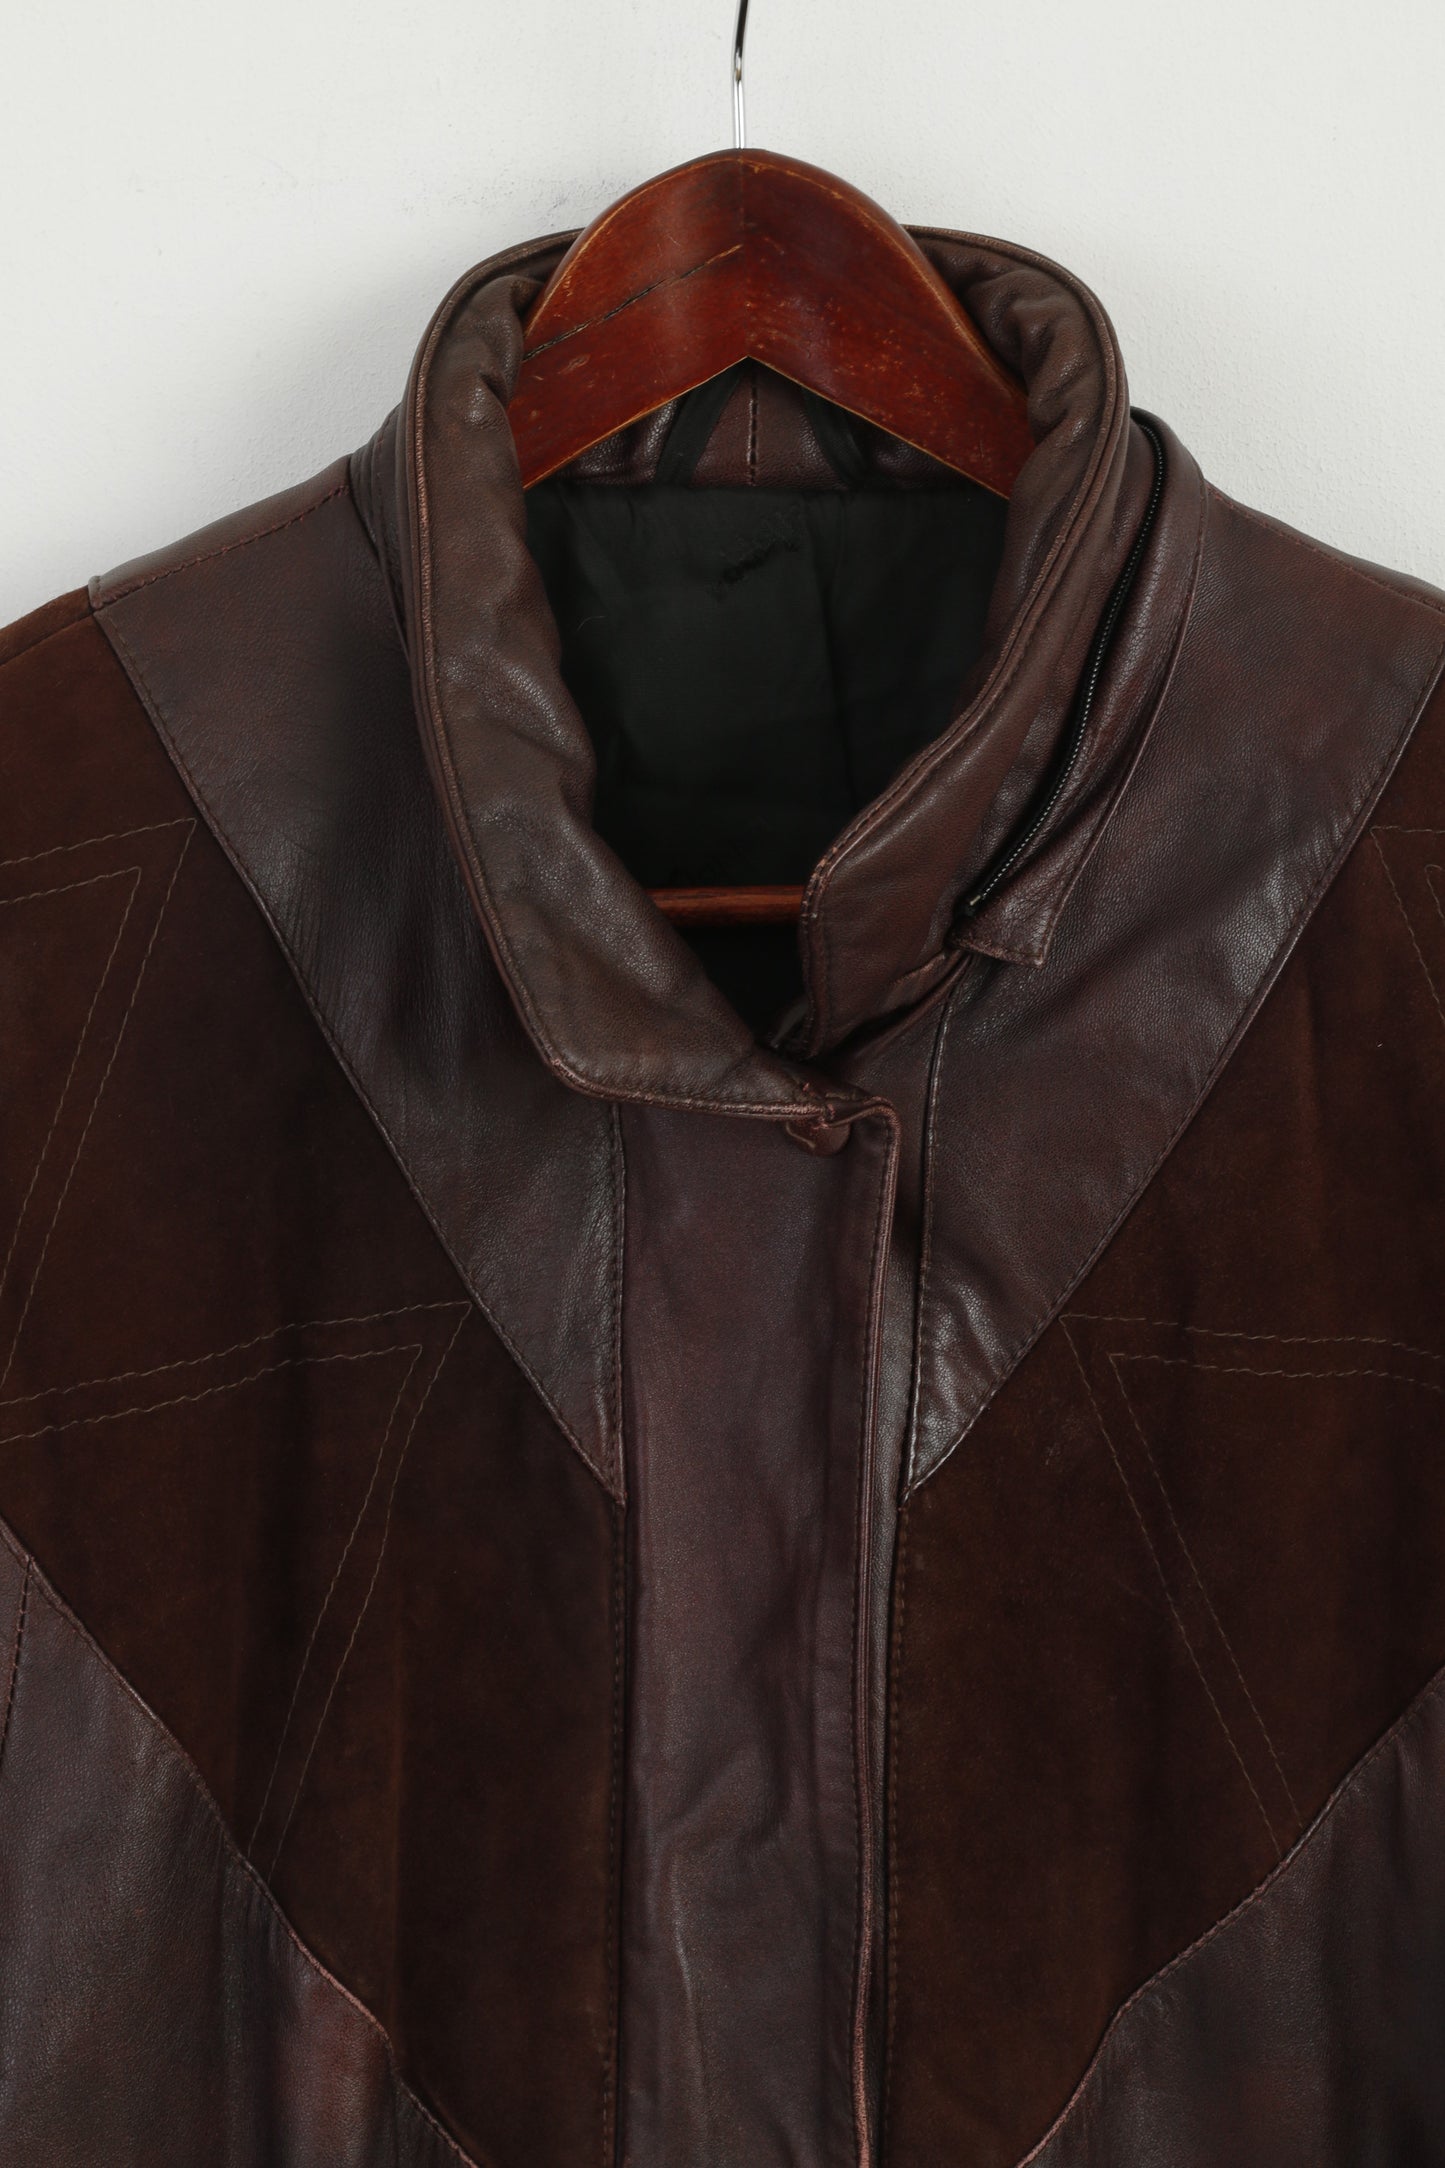 Mokka Nappa Finland Women 36 S Jacket Brown Leather Raglan Sleeve Full Zipper Long Top